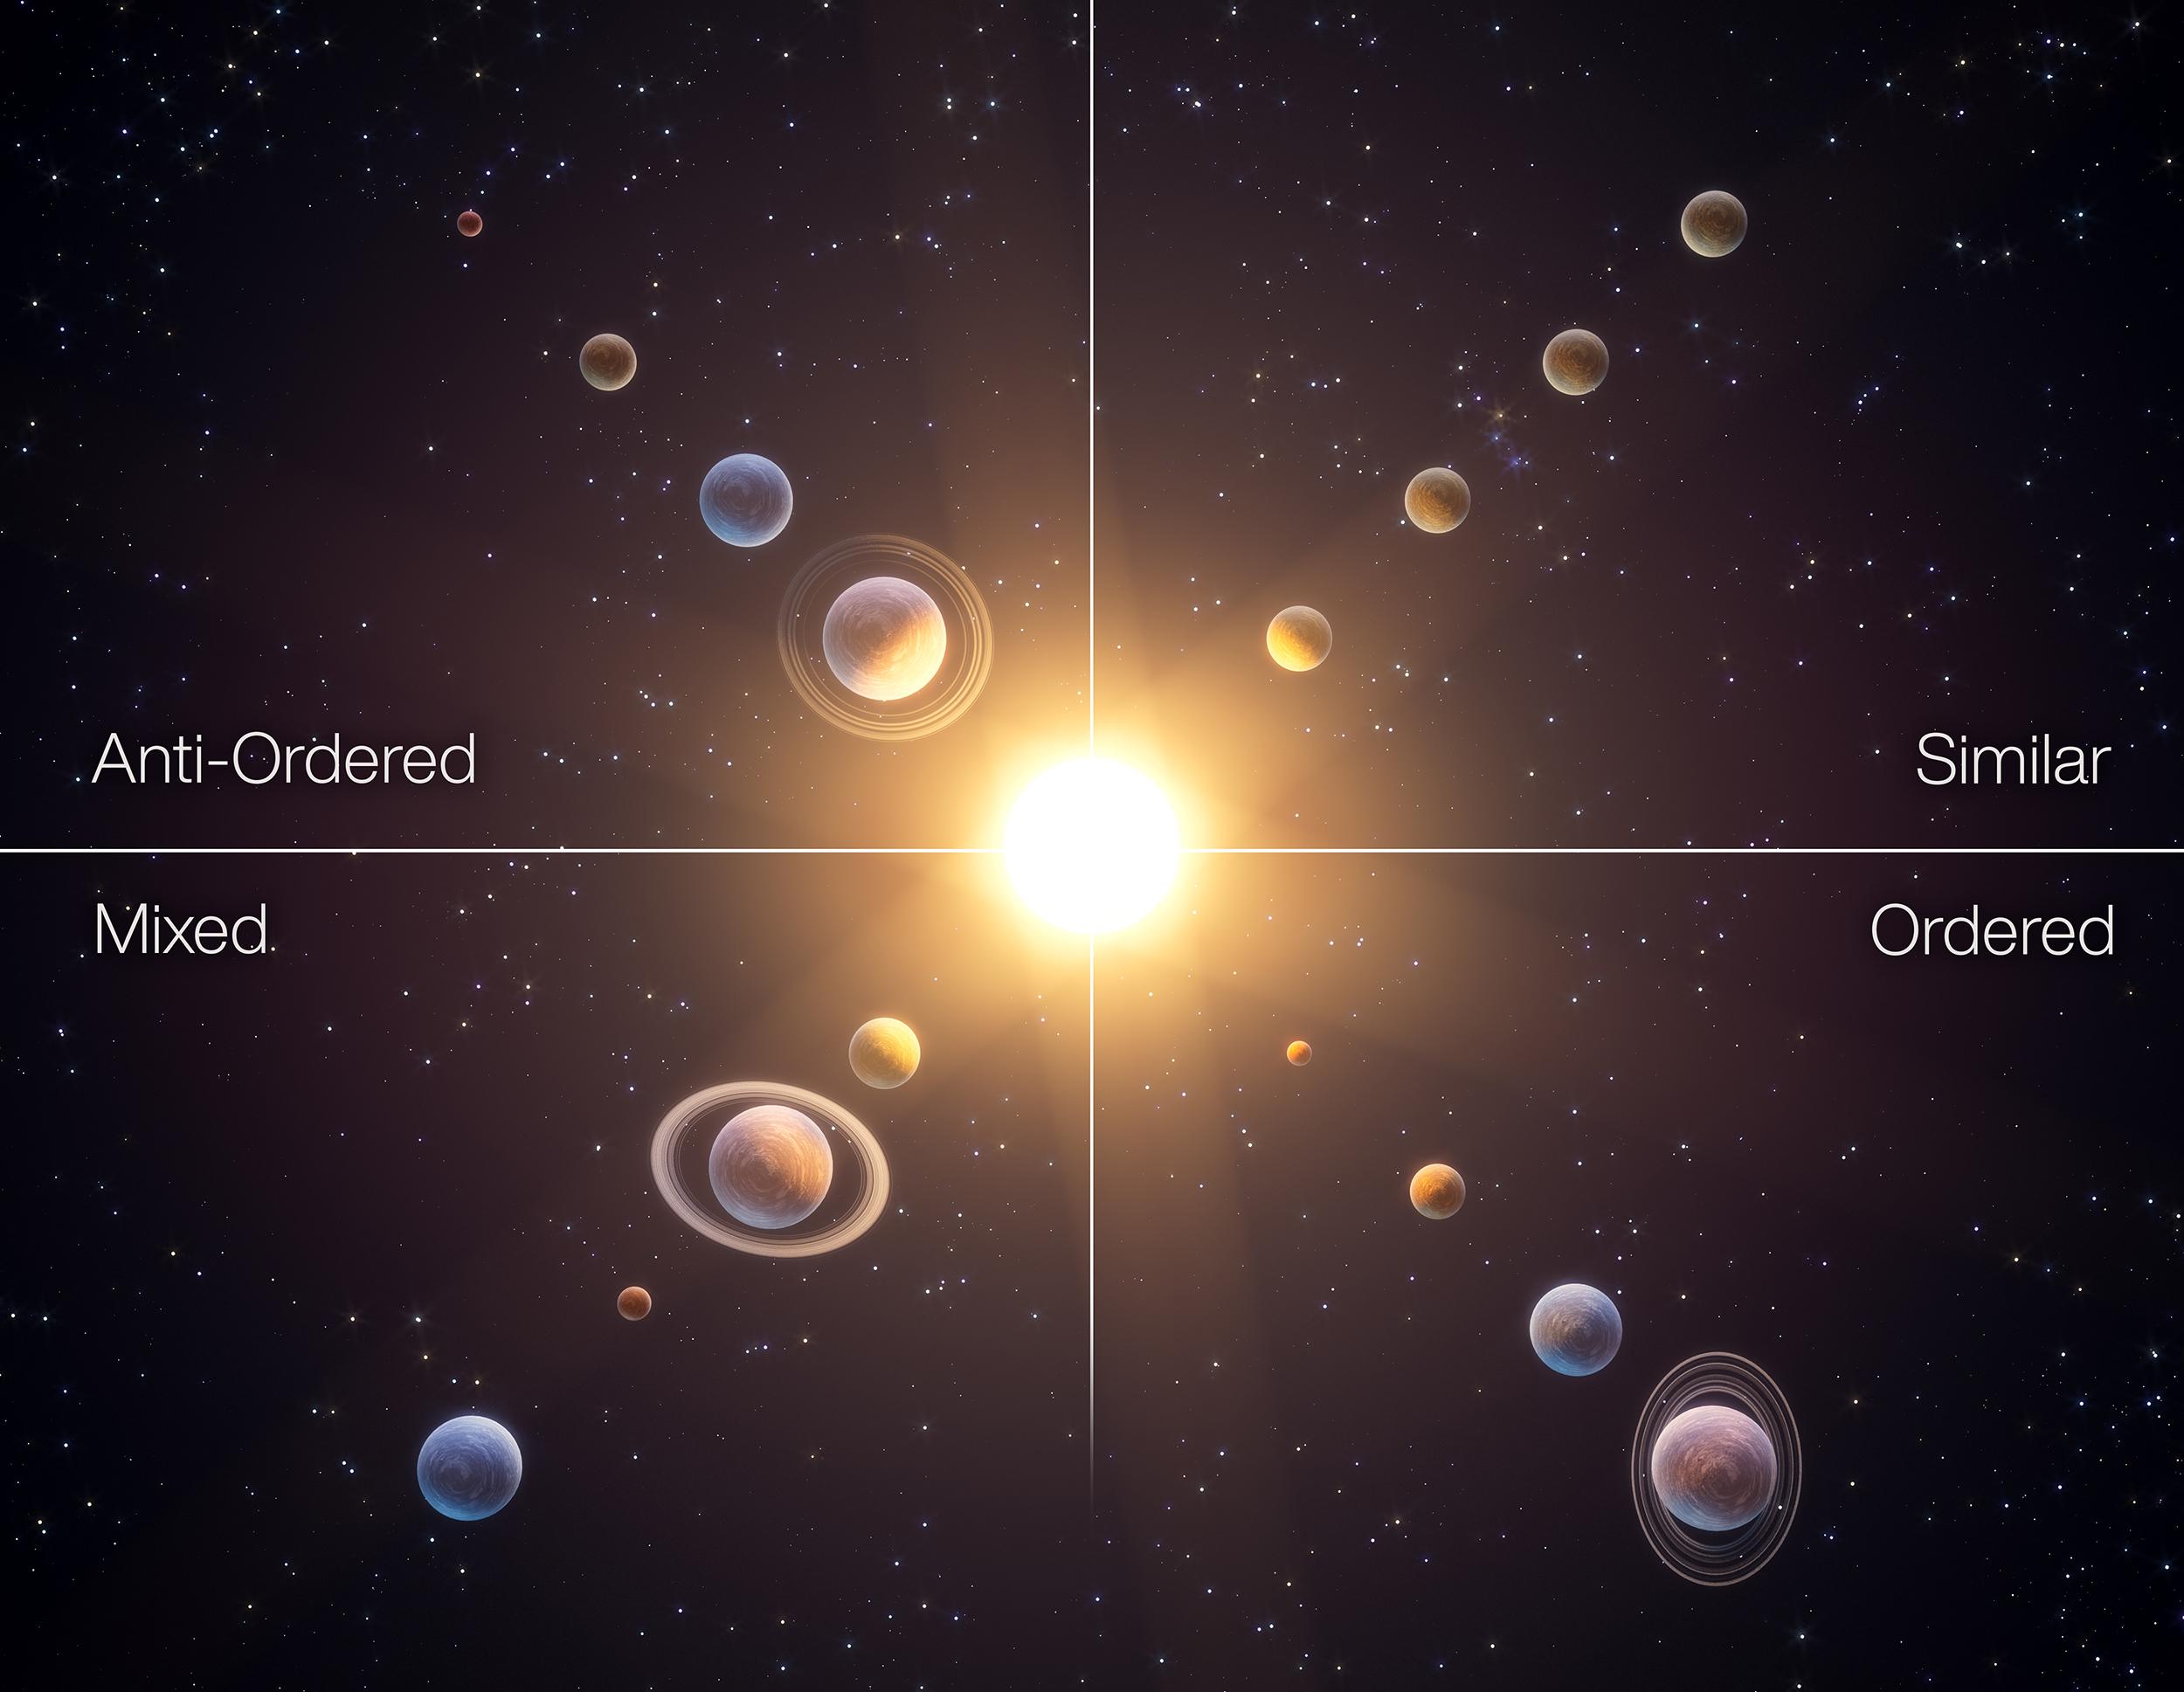 Il existe quatre classes d'architecture de systèmes planétaires: si les petites planètes sont proches de l'étoile et les planètes massives plus éloignées, ces systèmes ont une architecture "ordonnée". À l'inverse, si la masse des planètes d'un système tend à diminuer avec la distance à l'étoile, ces systèmes sont "anti-ordonnés". Si toutes les planètes ont des masses similaires, l'architecture de ce système est "similaire". Les systèmes "mélangés" sont ceux dans lesquels les masses planétaires présentent de grandes variations. Les recherches suggèrent que les systèmes planétaires qui ont la même classe d'architecture ont des voies de formation communes. [NCCR PlanetS - Tobias Stierli]